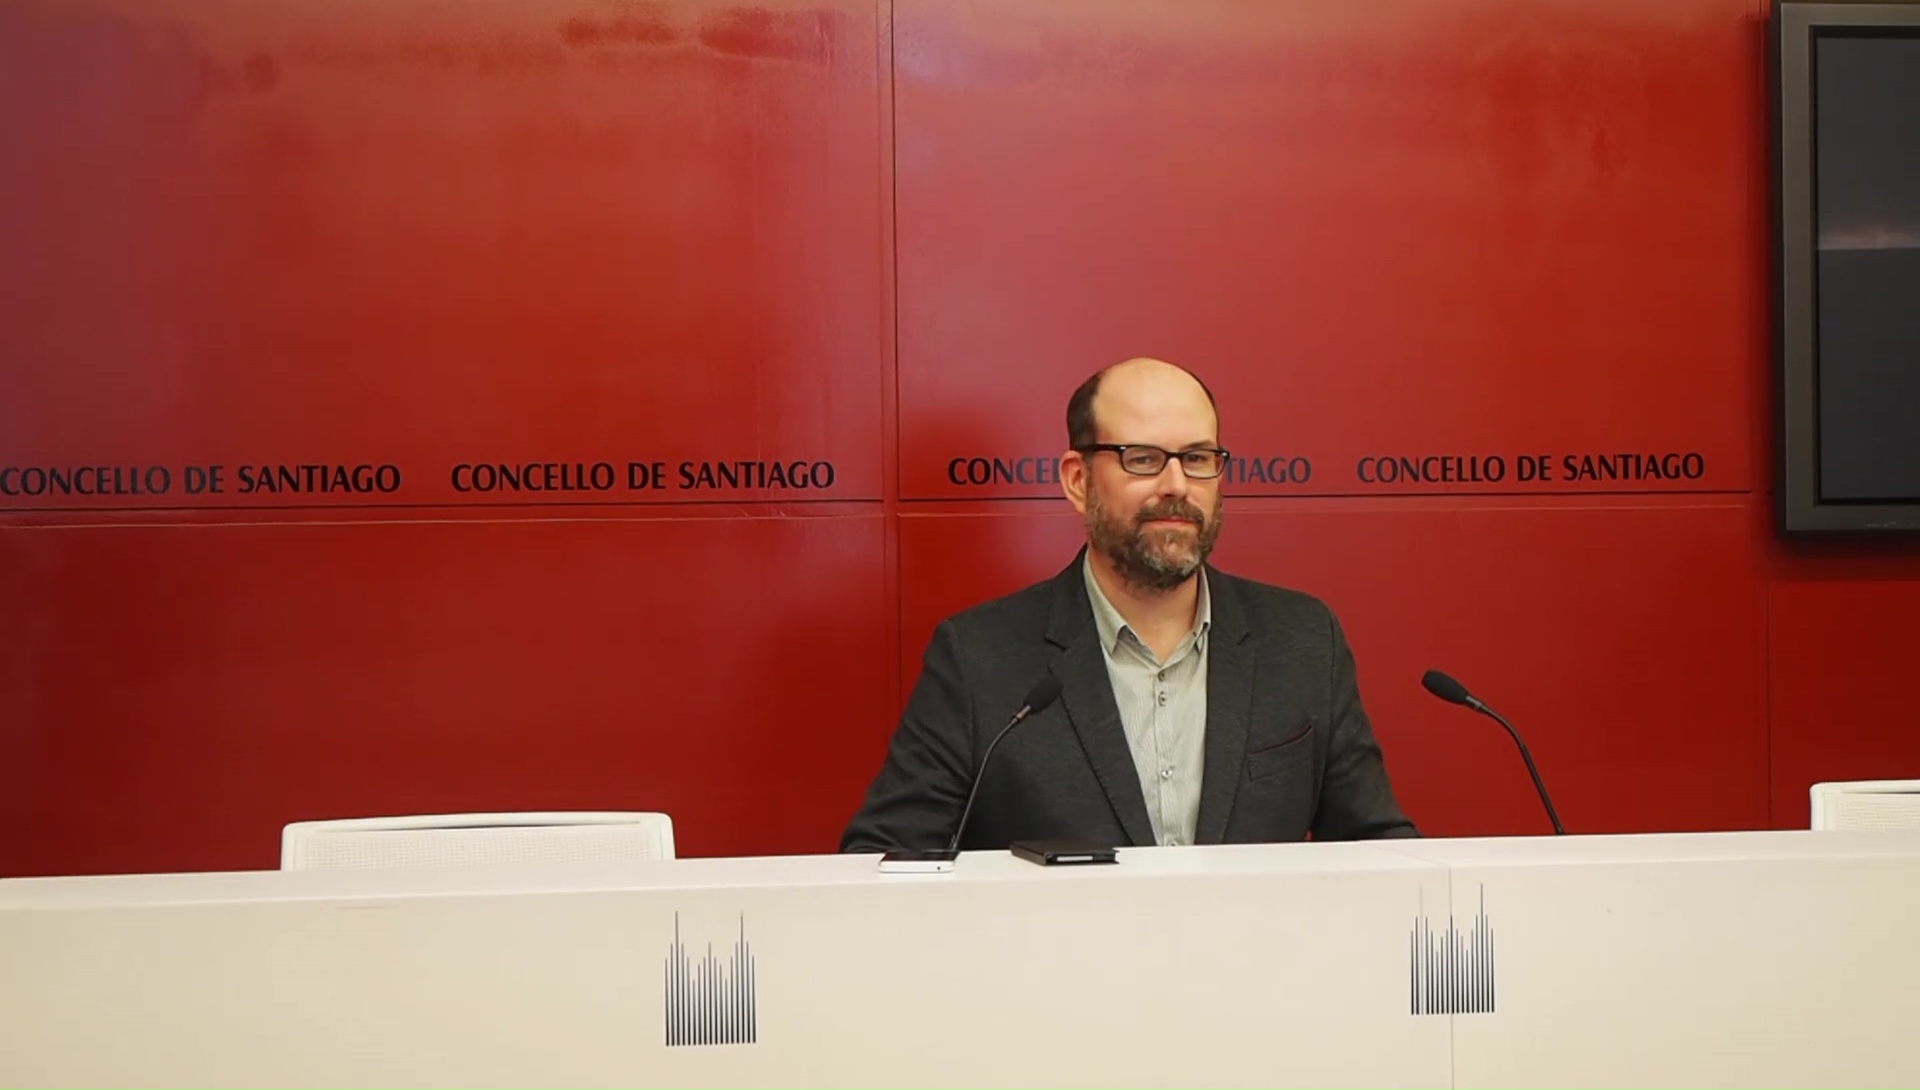 Martiño Noriega sobre a presenza de xabaríns: “Nin minusvalorar nin crear alarma social”